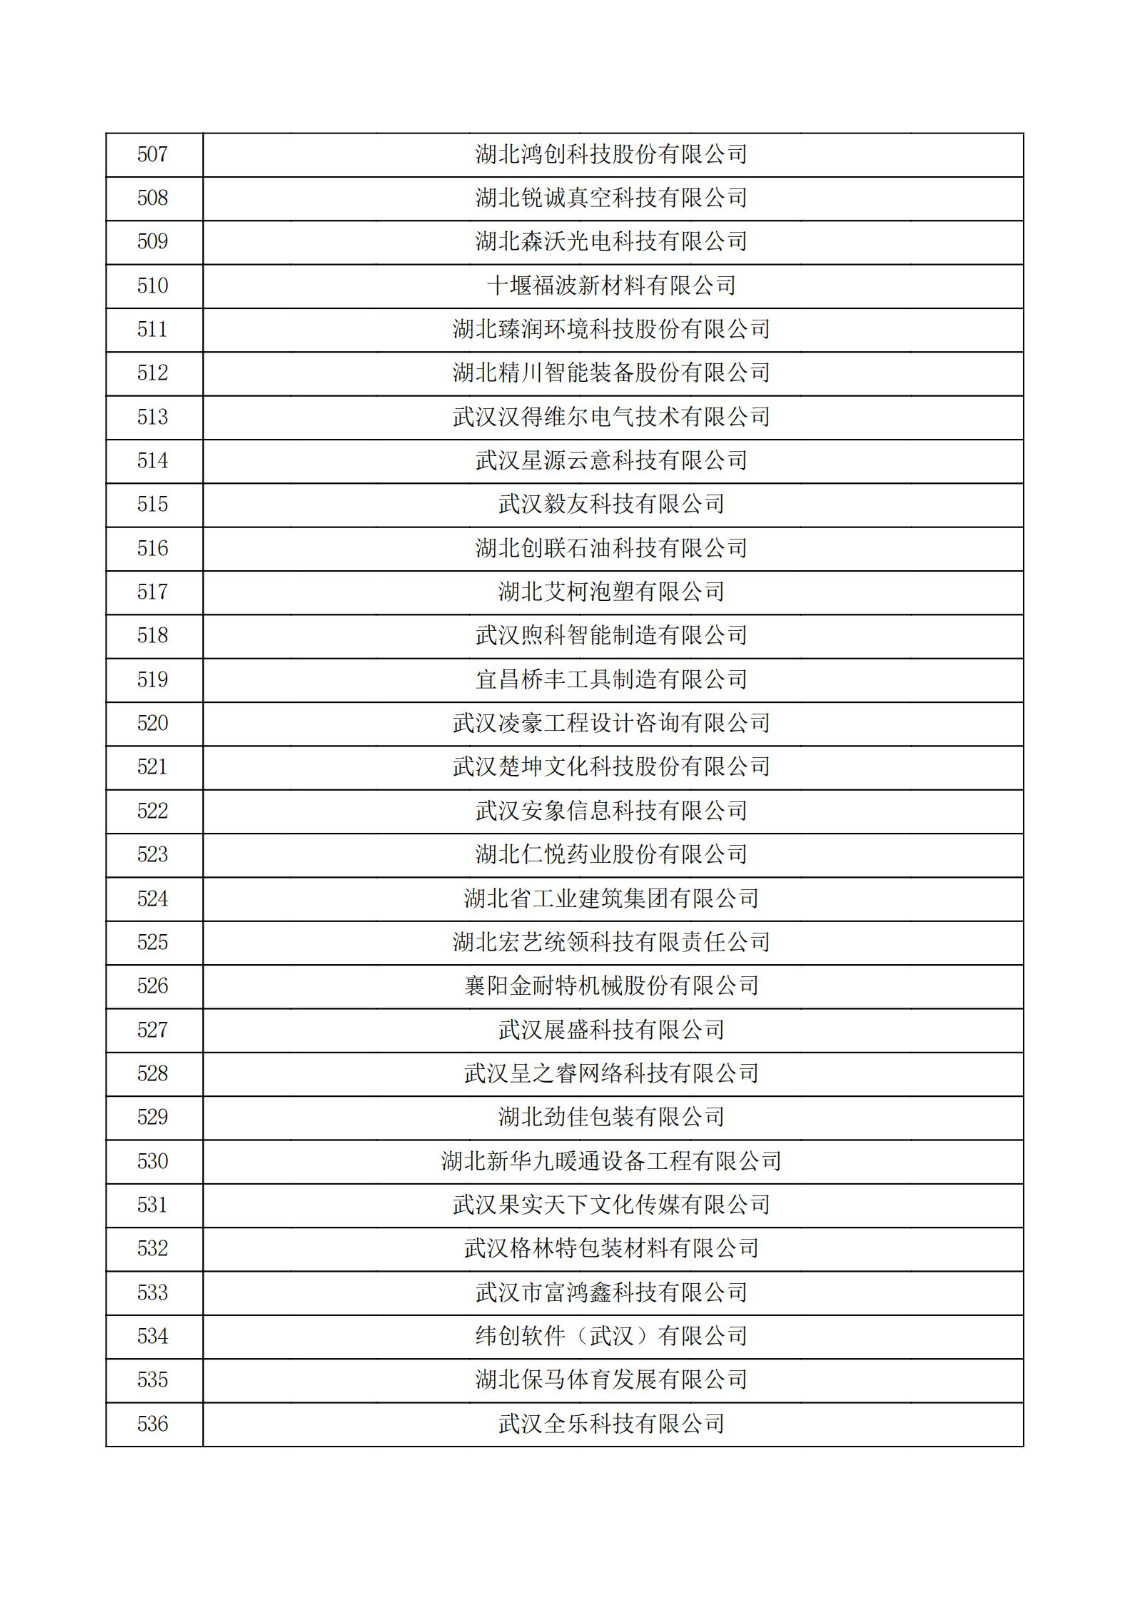 湖北省2021年第二批认定报备高新技术企业名单_17.jpg